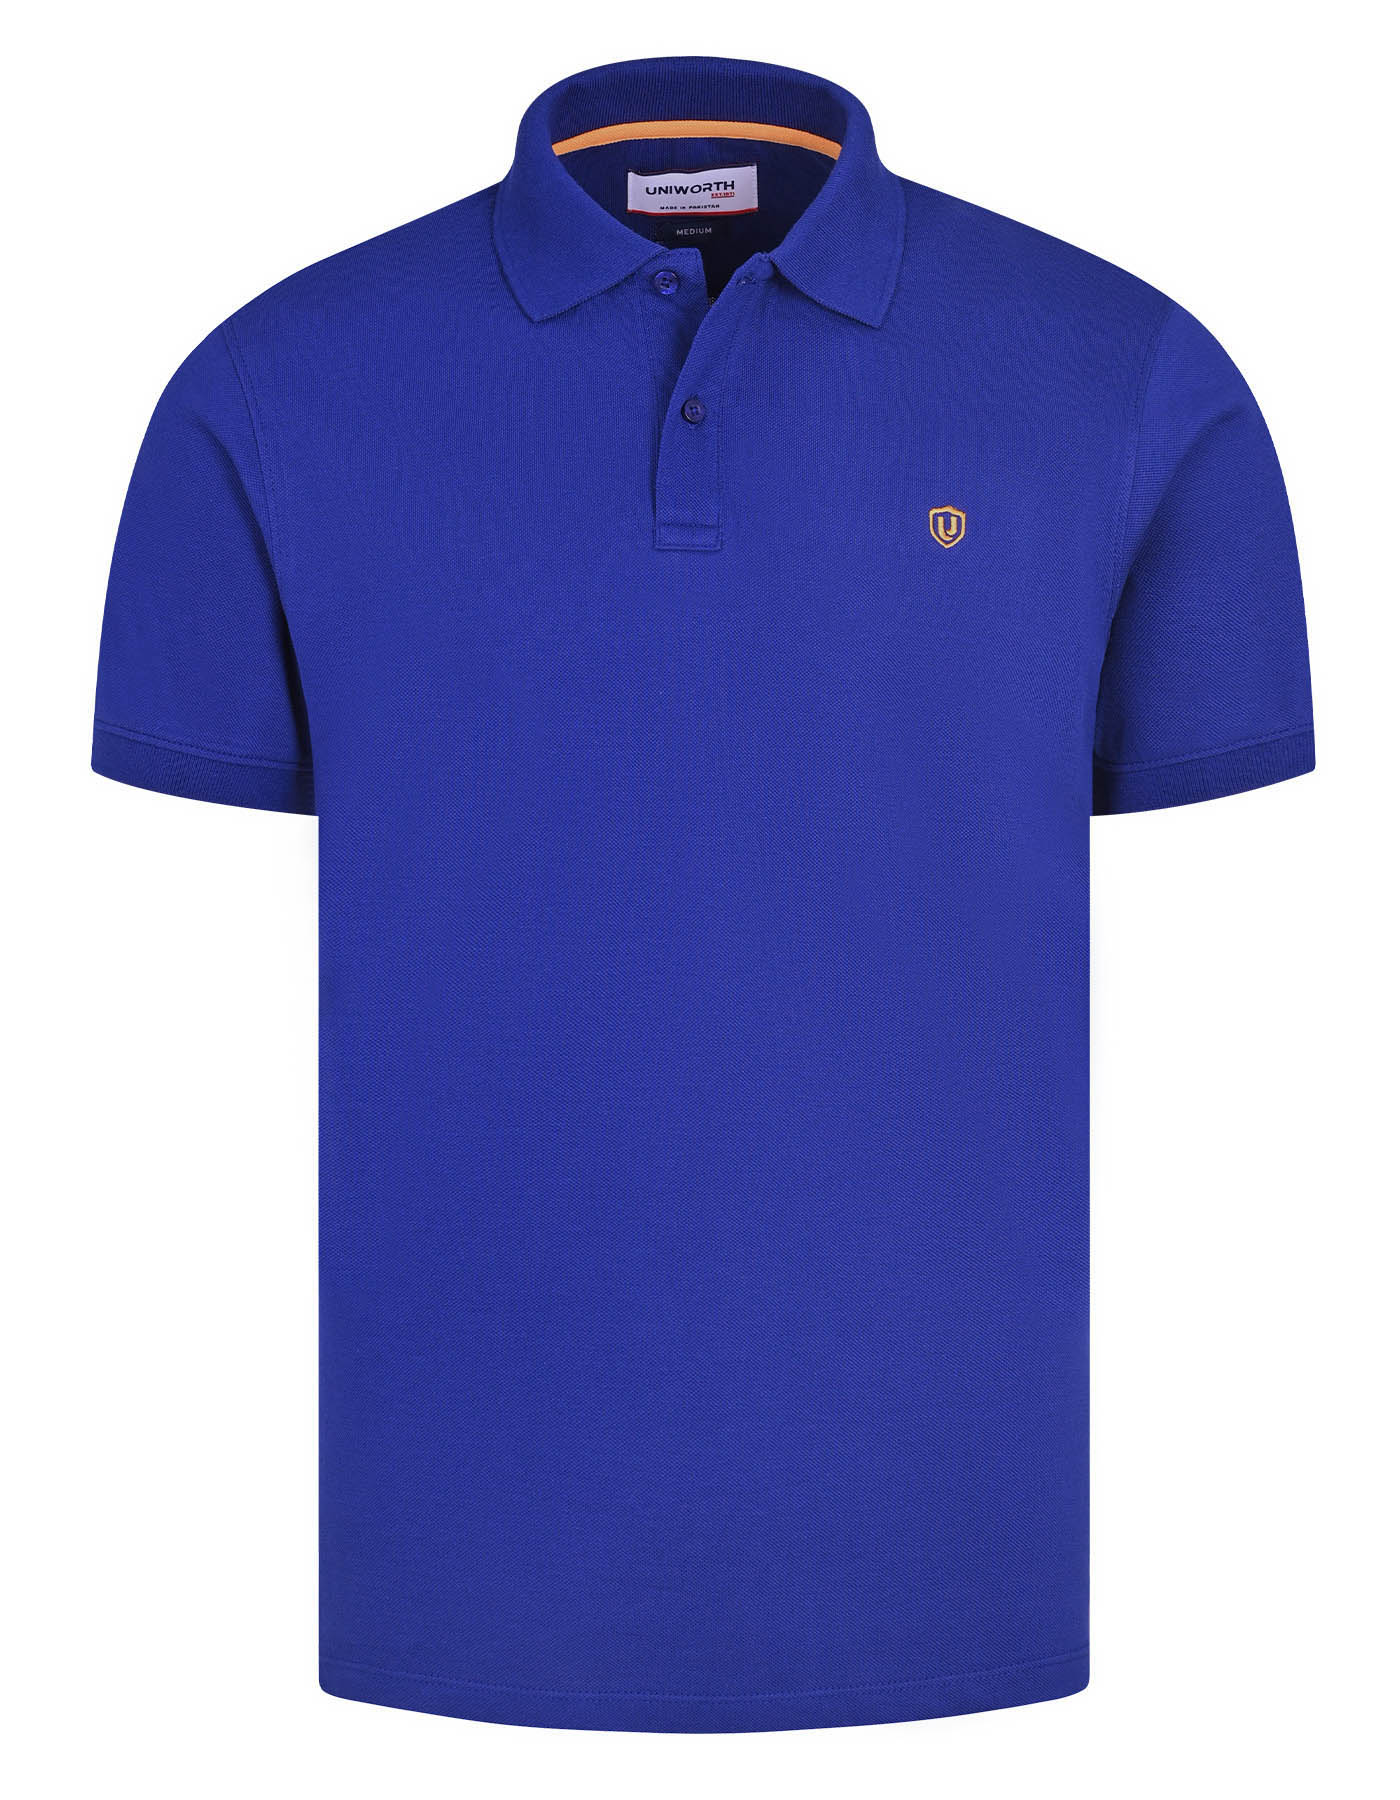 Blue Cotton Polo Shirt For Men |Uniworth